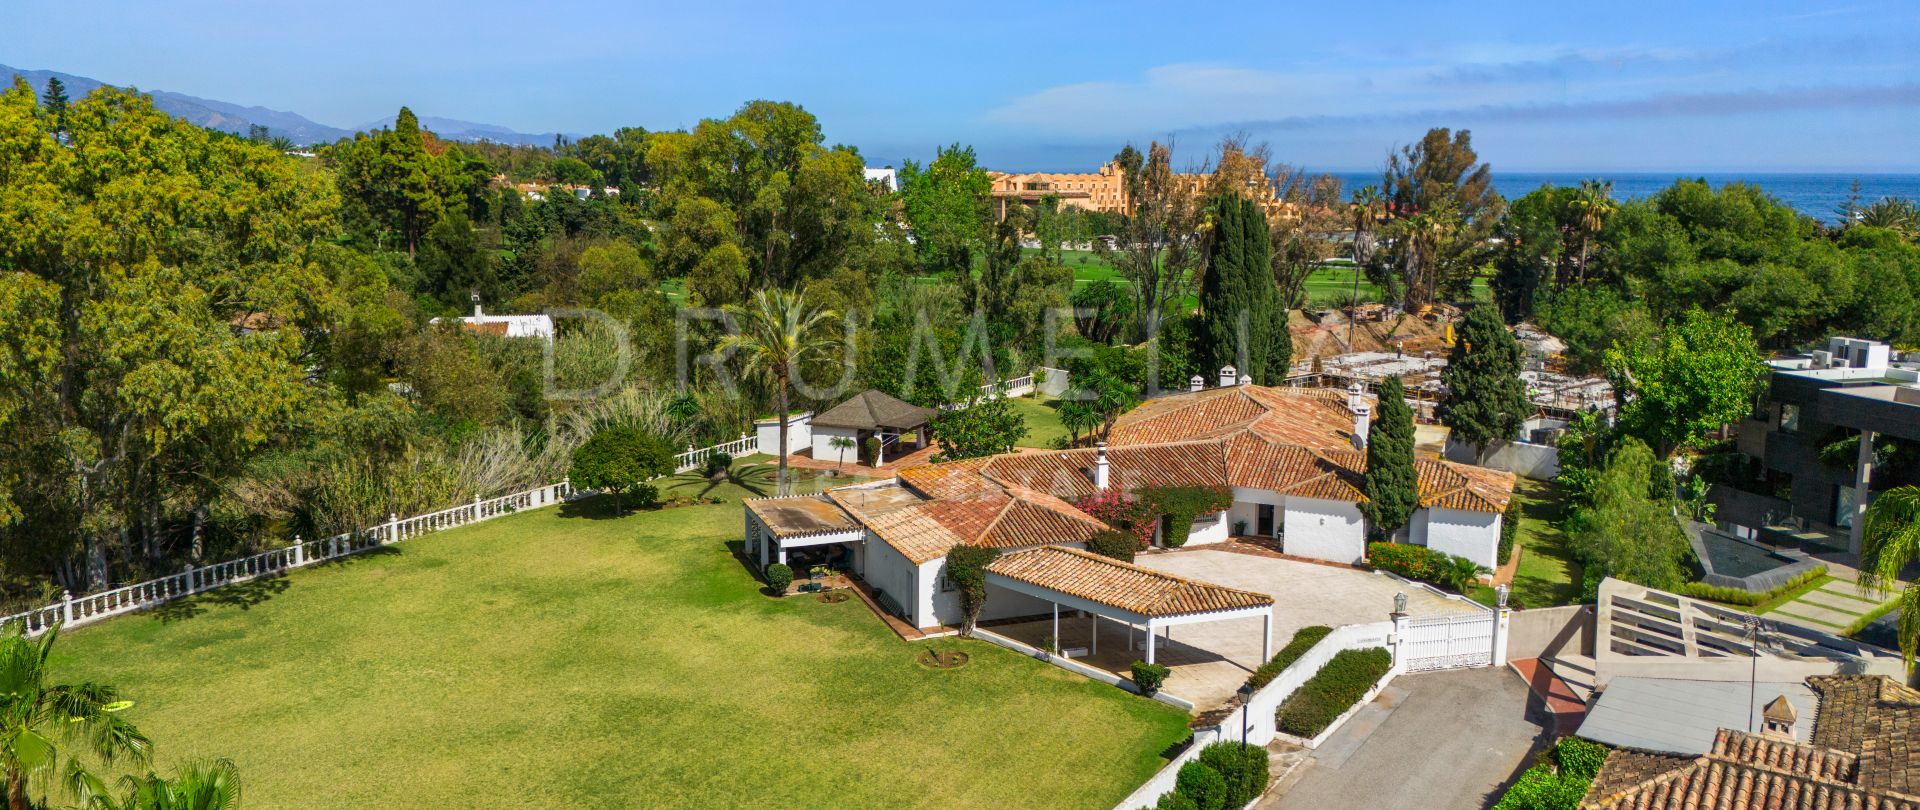 Klassieke luxe villa in Andalusische stijl vlakbij het strand te koop in het mooie Casasola, Estepona